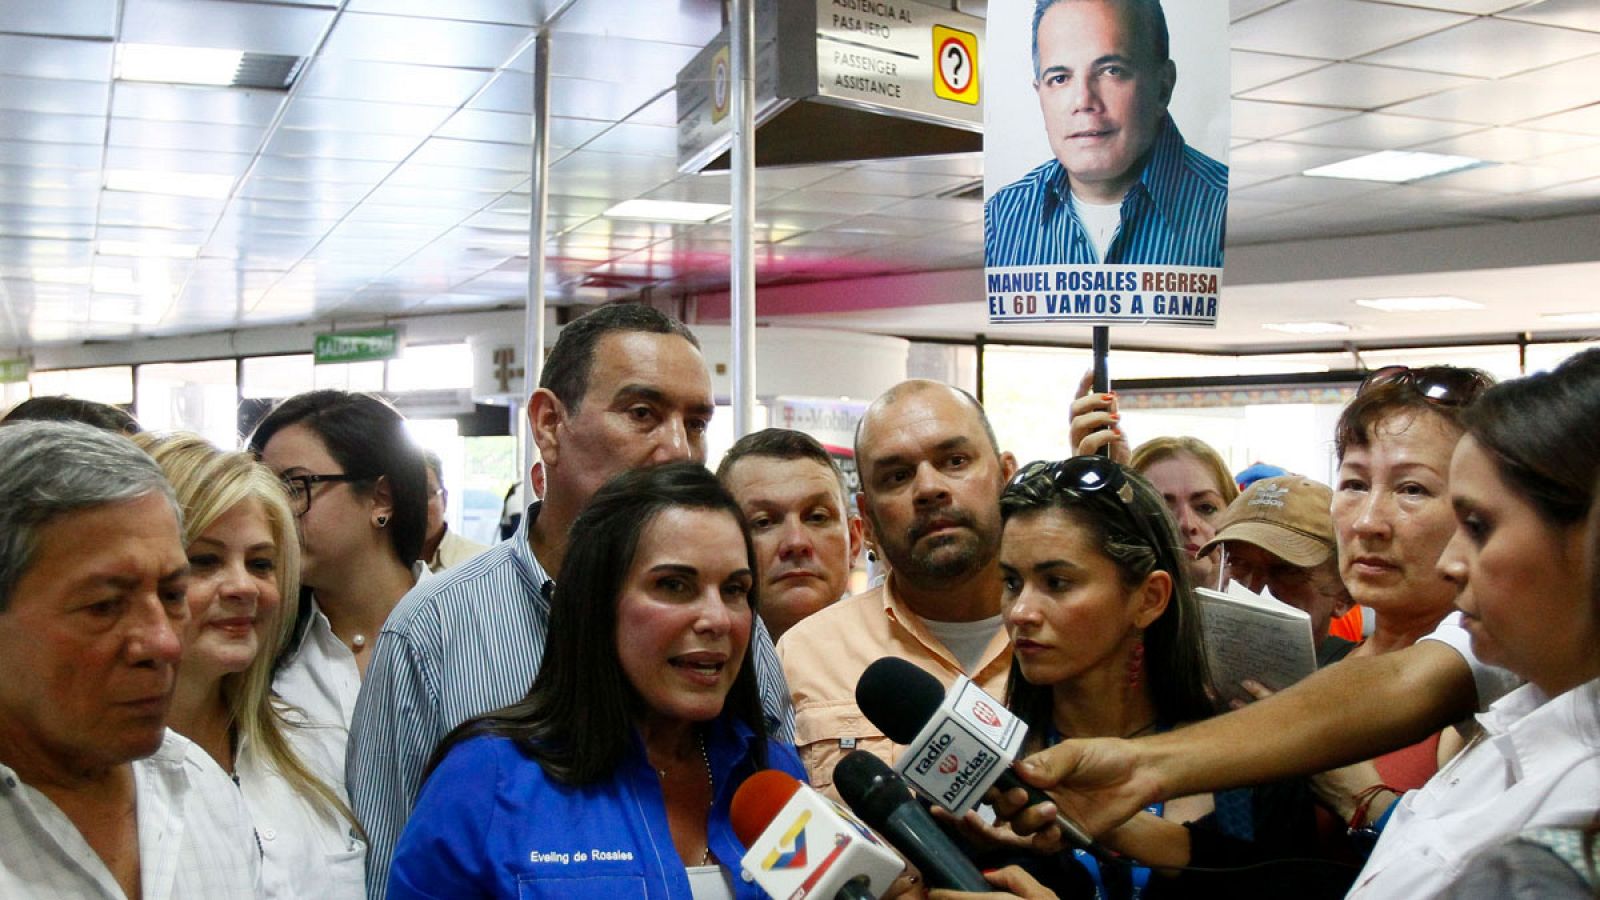 La esposa de Rosales y alcaldesa de Maracaibo charla con un grupo de periodistas antes de la llegada del opositor.